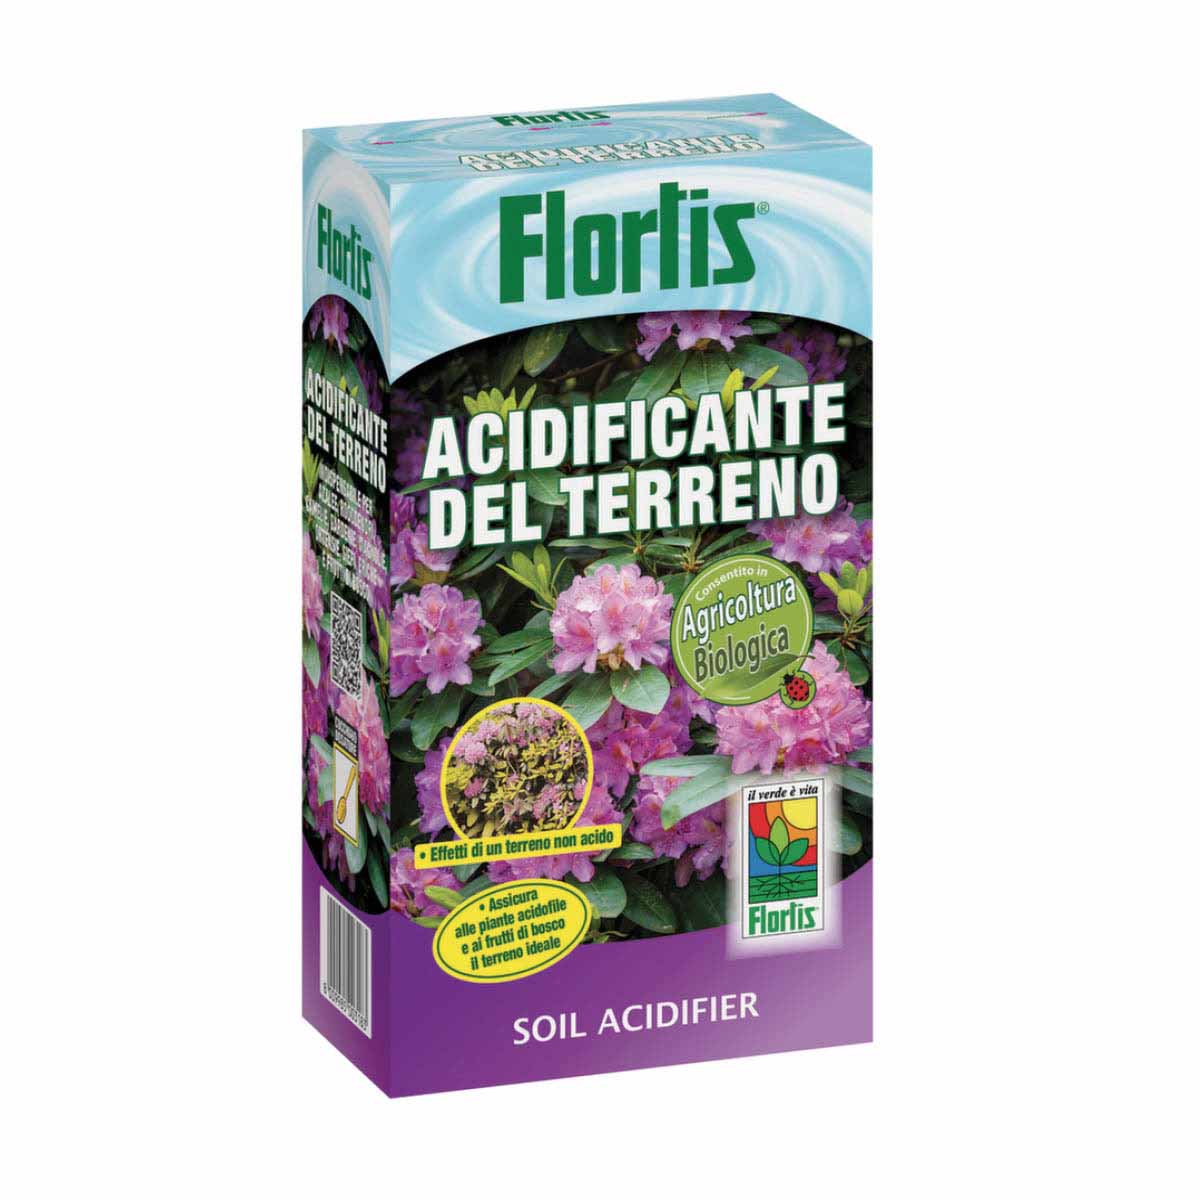 Flortis Acidificante del terreno